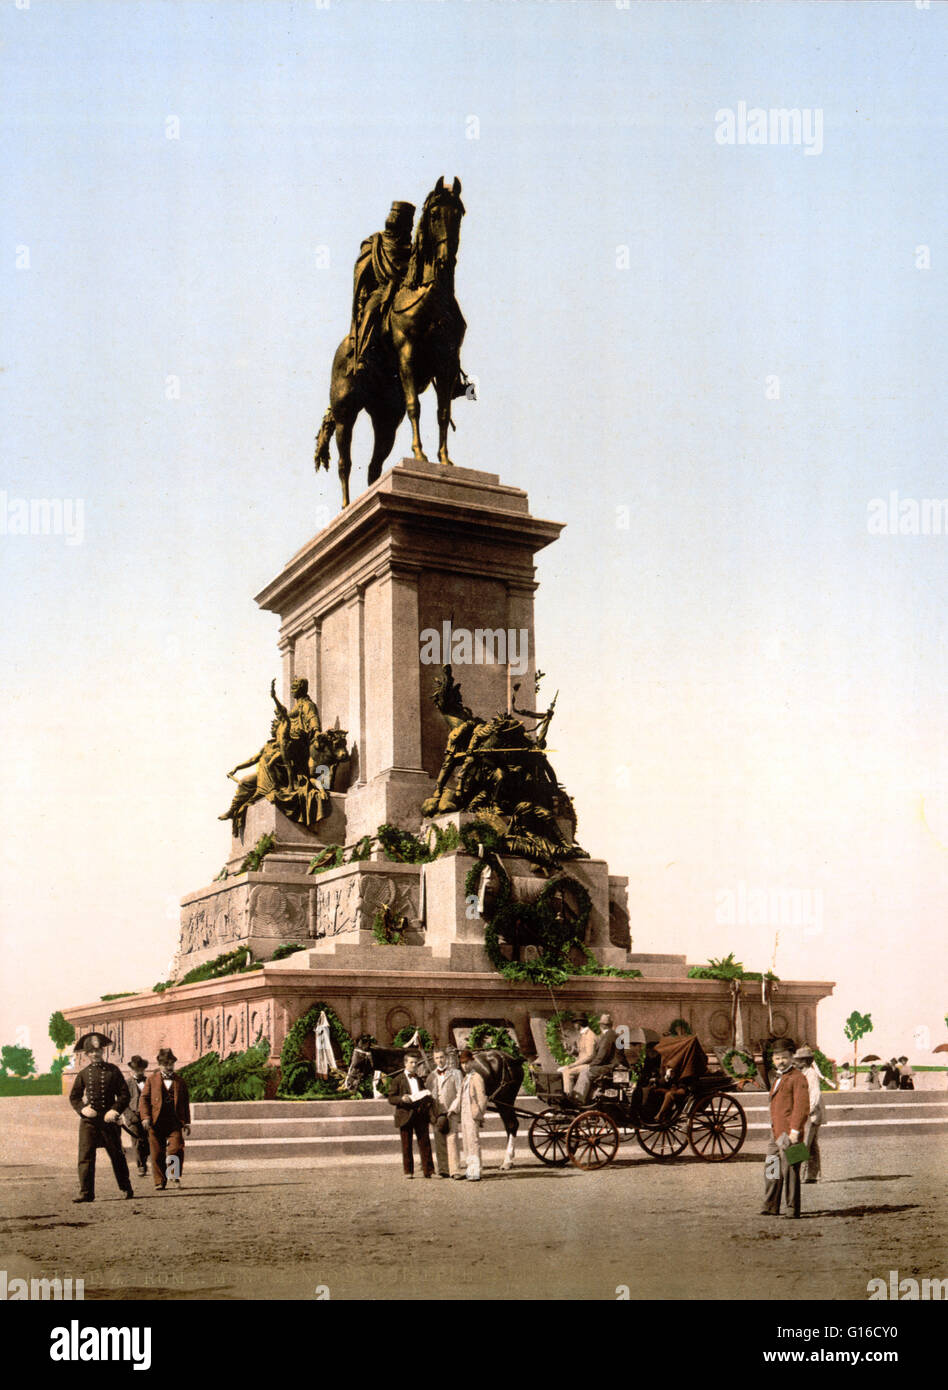 Le monument équestre dédié à Giuseppe Garibaldi est une imposante statue équestre placée à Rome sur le point le plus élevé du Janicule. Le monument est constitué d'une statue en bronze représentant le héros à cheval, qui est placé sur un grand marbl Banque D'Images